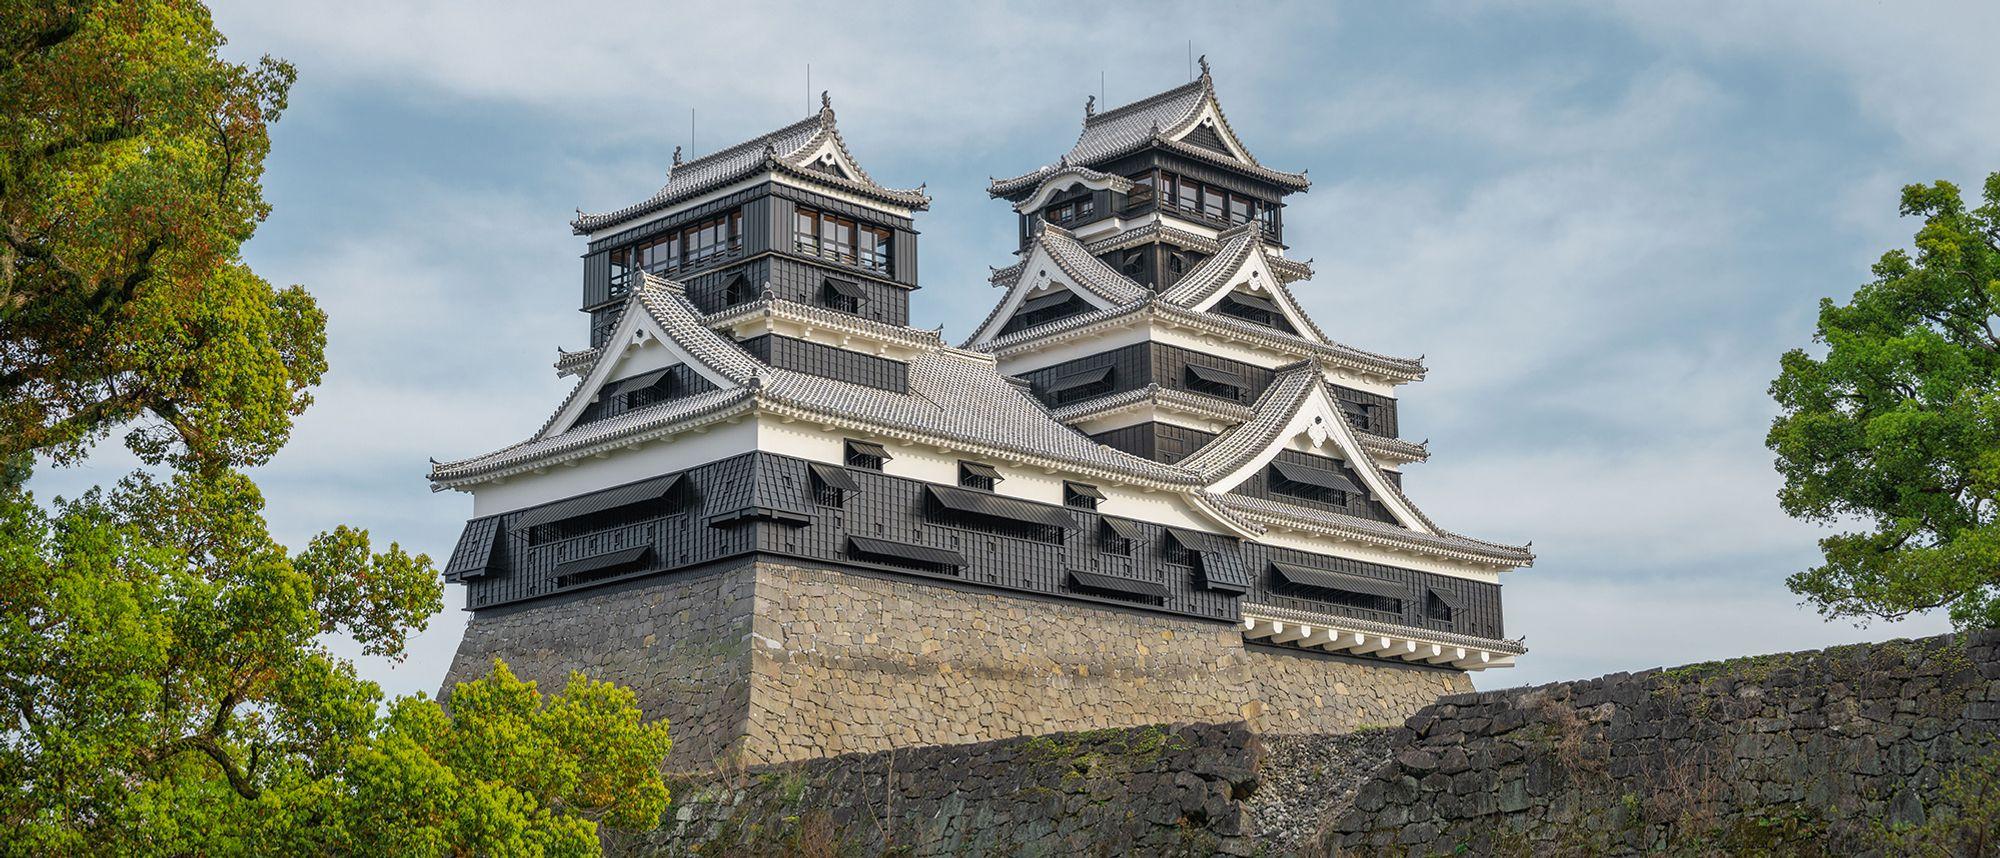 Kumamoto Castle in Kumamoto